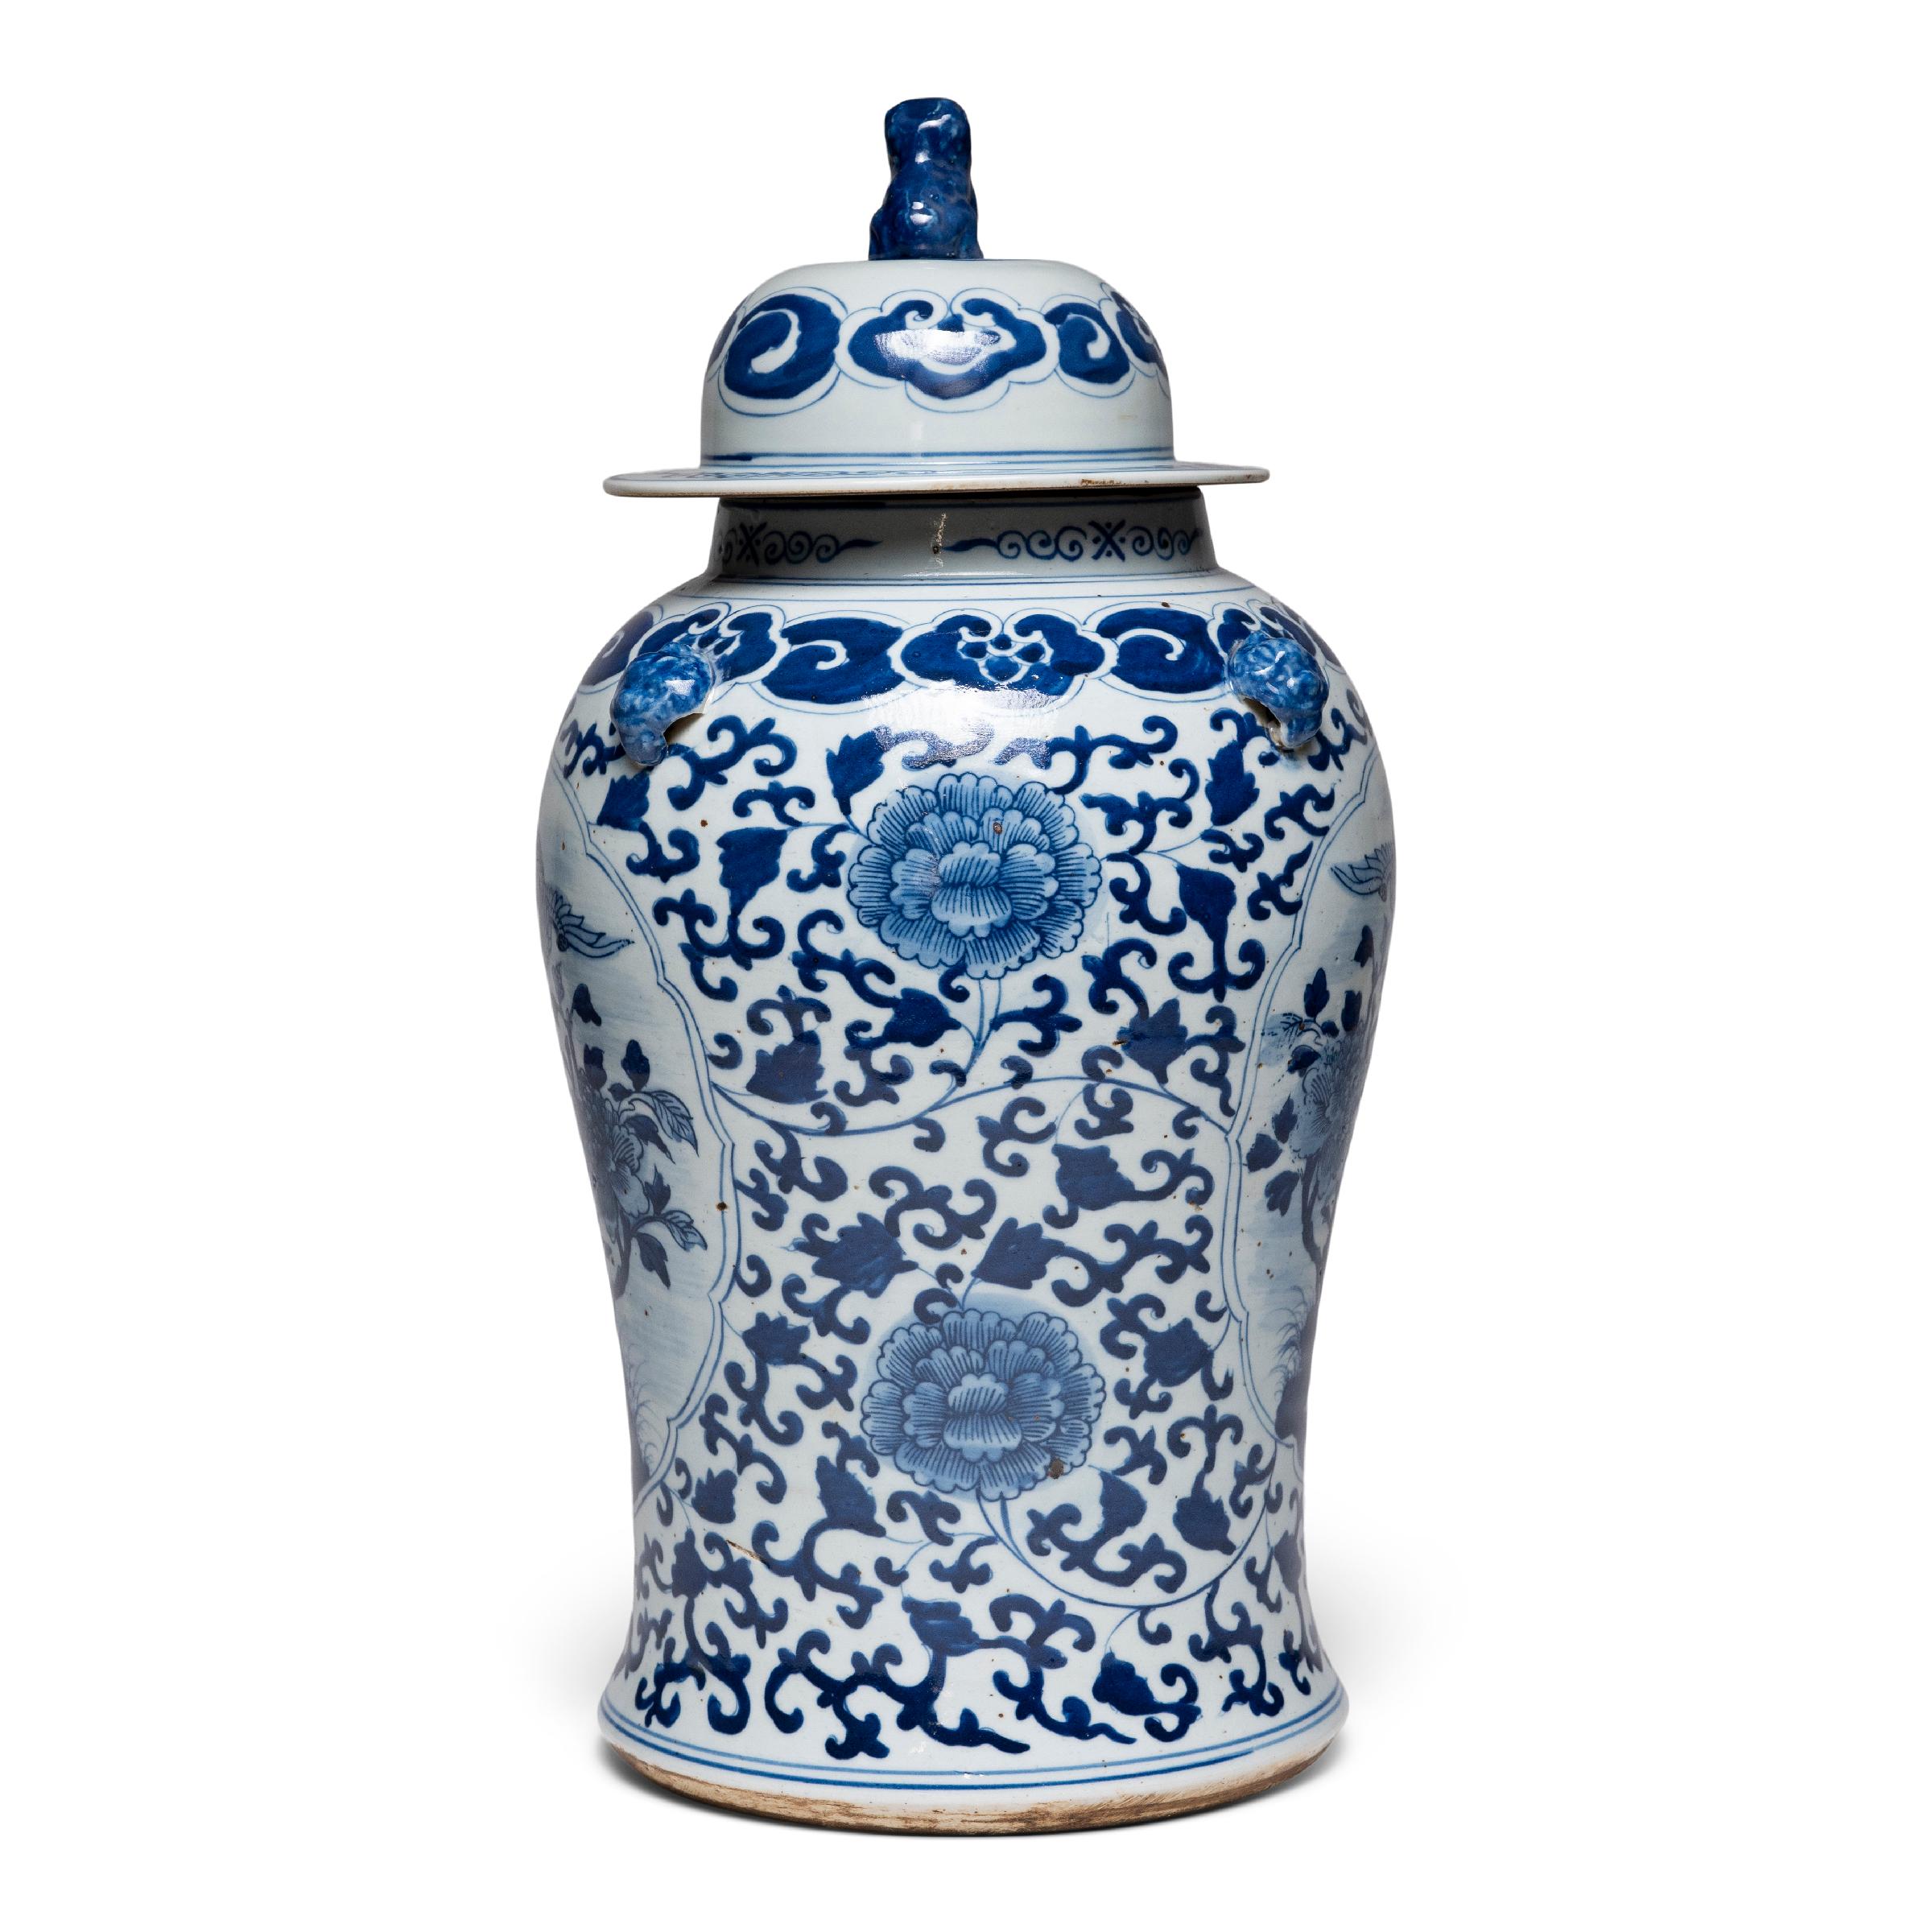 Cette jarre contemporaine à couvercle balustre s'inscrit dans la tradition séculaire de la porcelaine chinoise bleu et blanc. Peinte avec des pigments de cobalt pour une finition bleue brillante, la jarre est densément ornée de rinceaux de vigne et